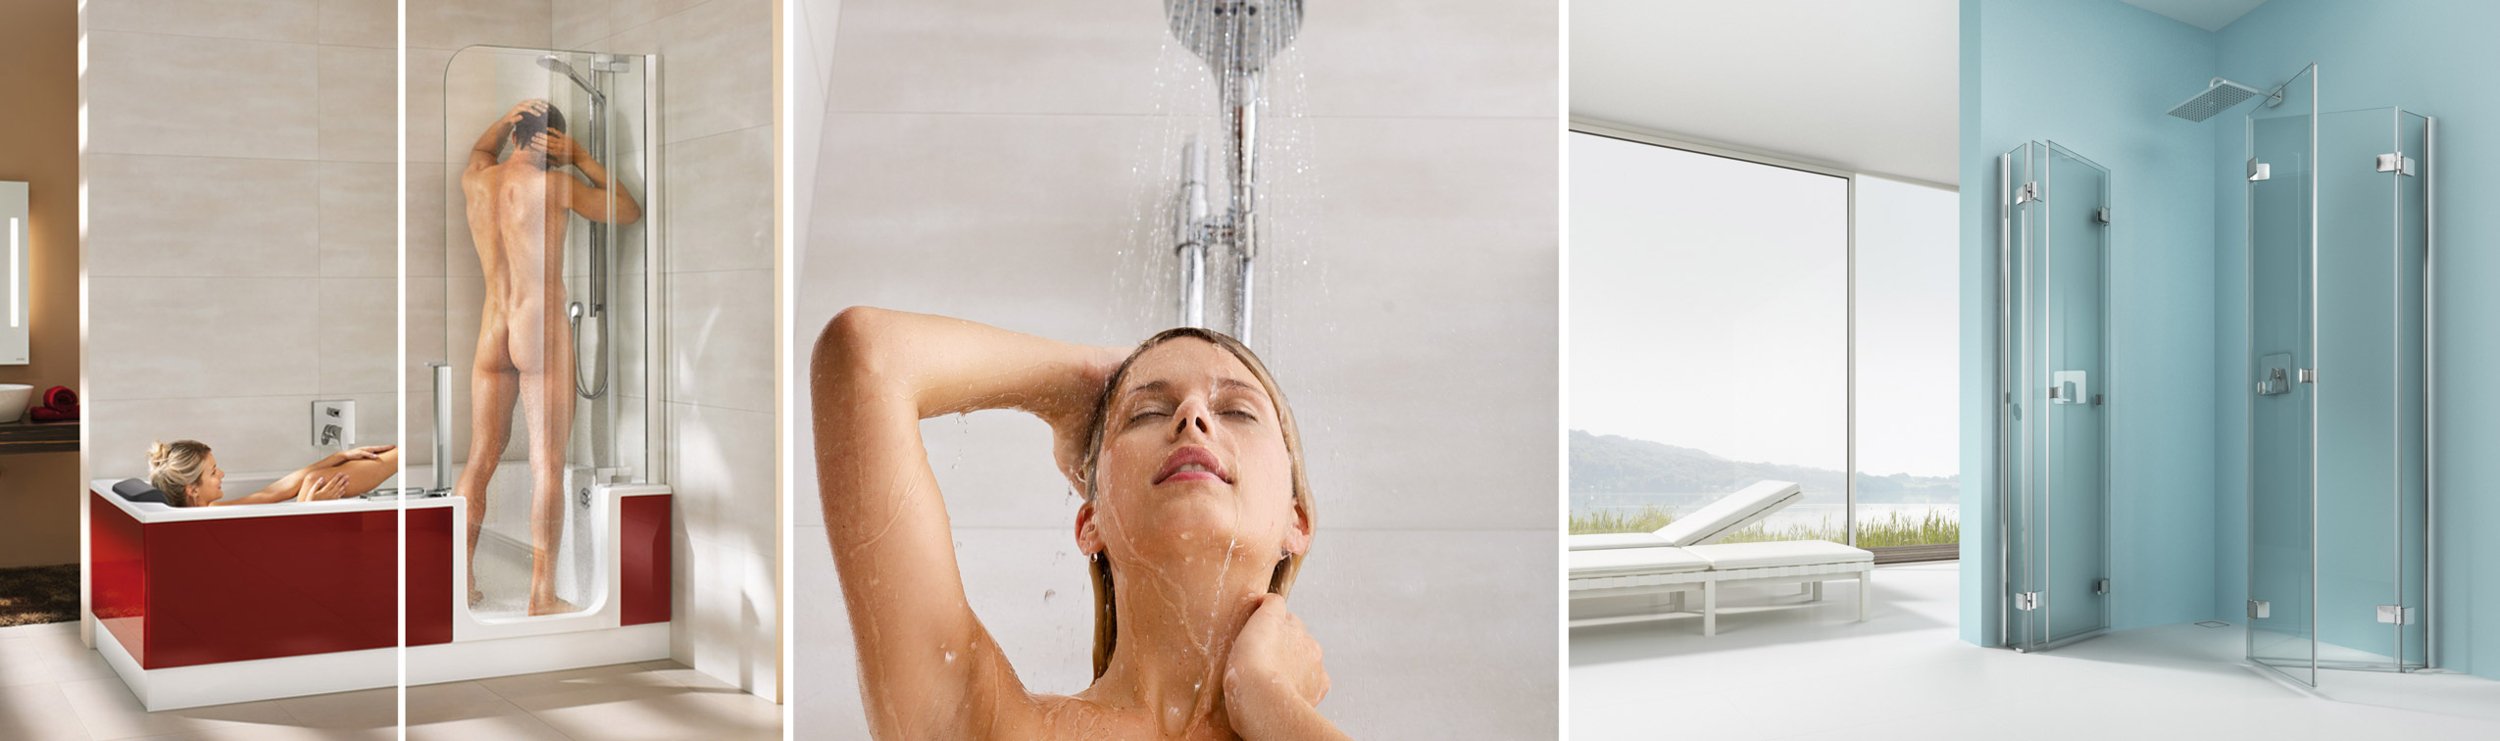 Douches et baignades sans barrières | © Artweger GmbH. & Co. KG